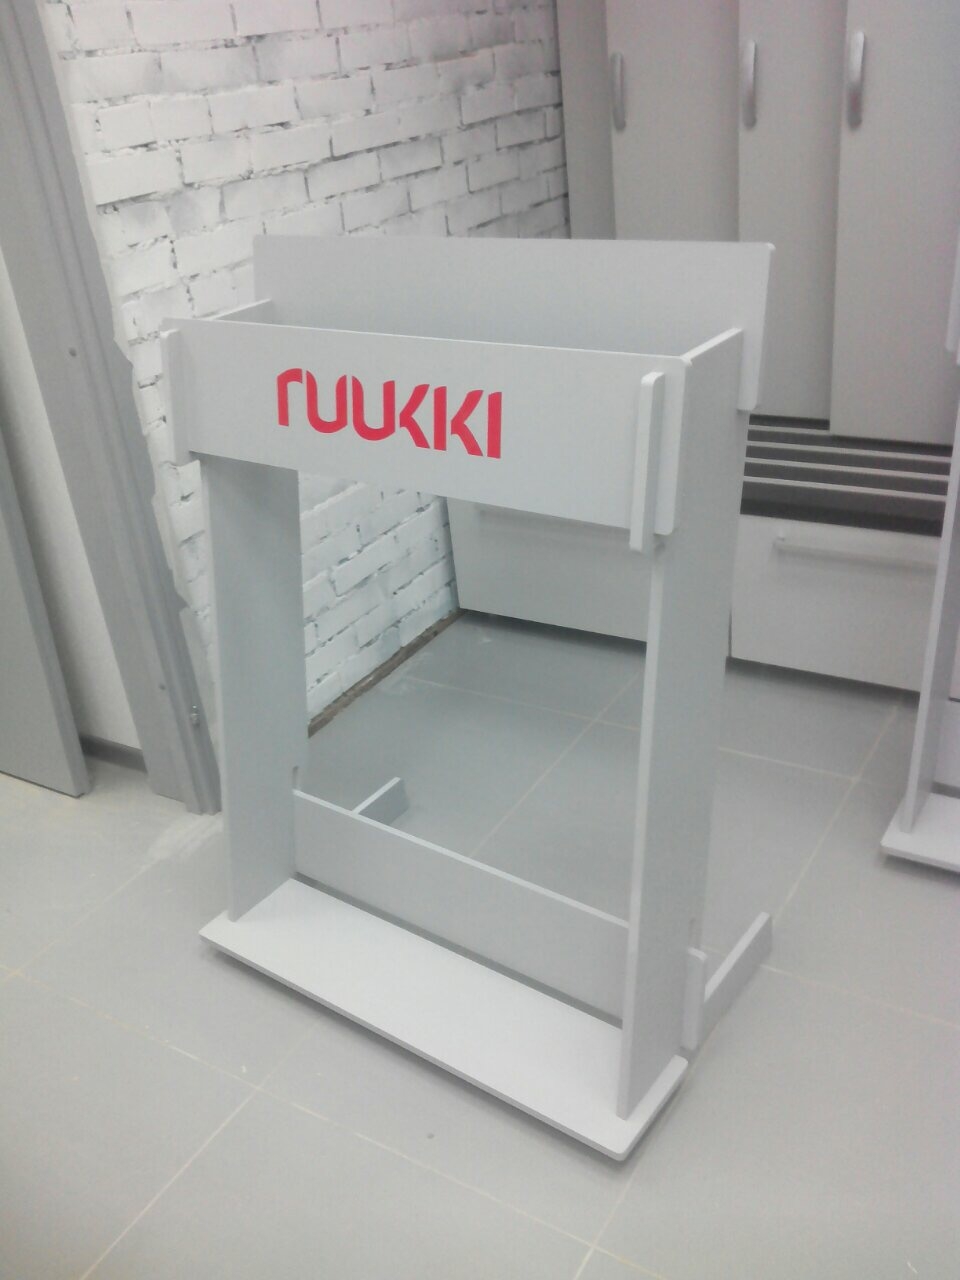 Ruukki - изготовление выставочных стендов в Самаре и Новосибирске